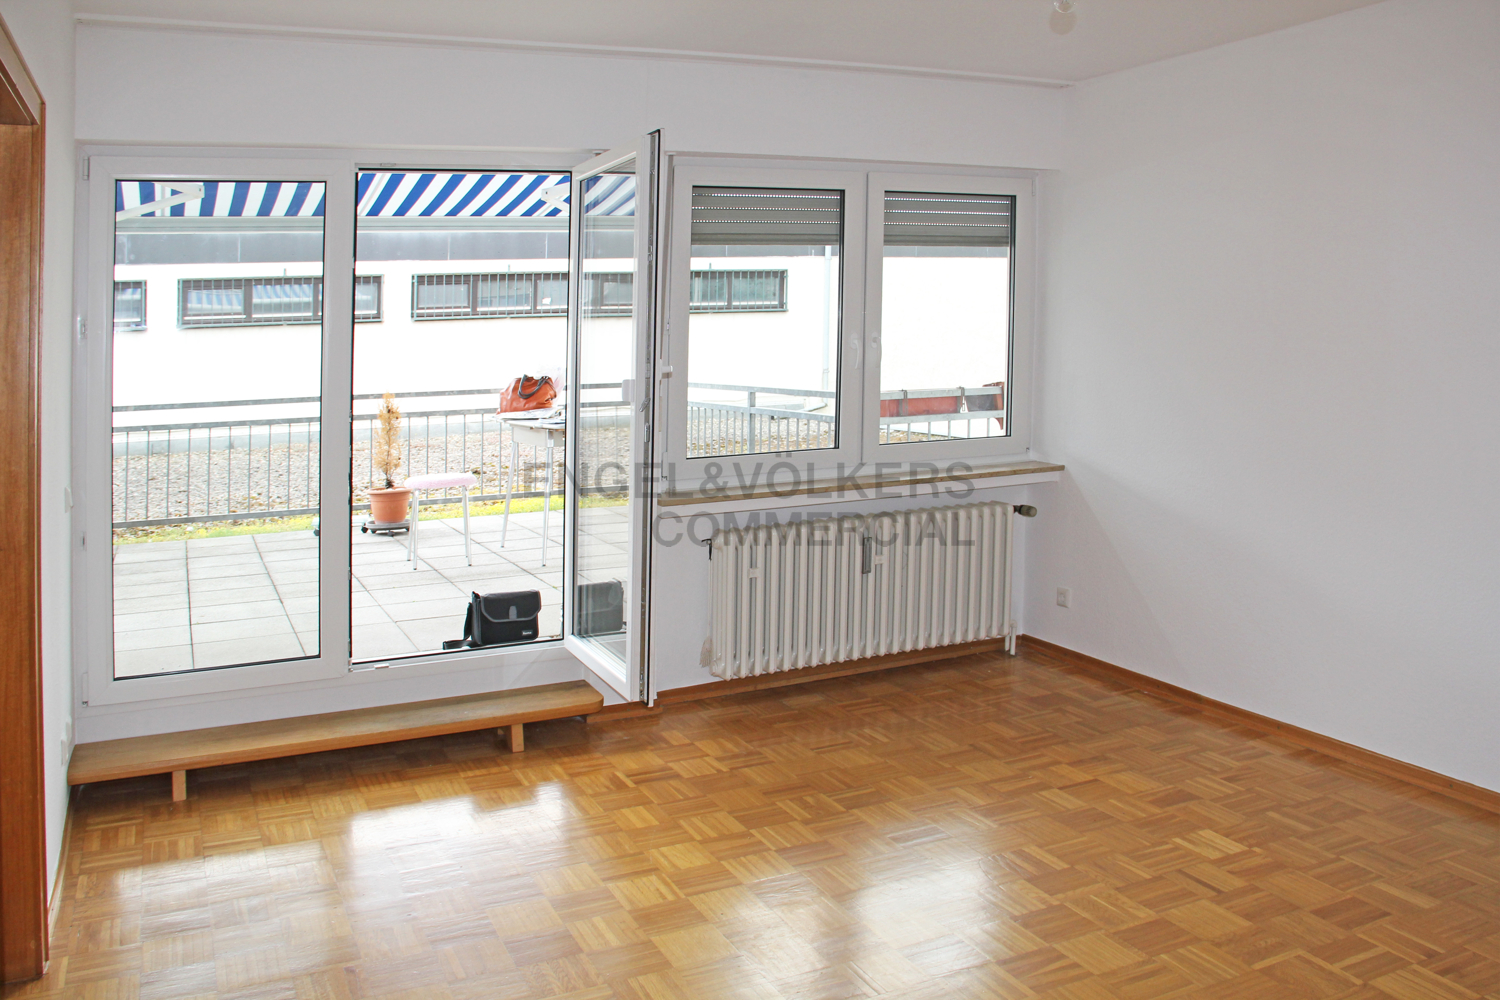 Investment / Wohn- und Geschäftshäuser in Bonn - Wohnung 1.OG Neubau Rückseite